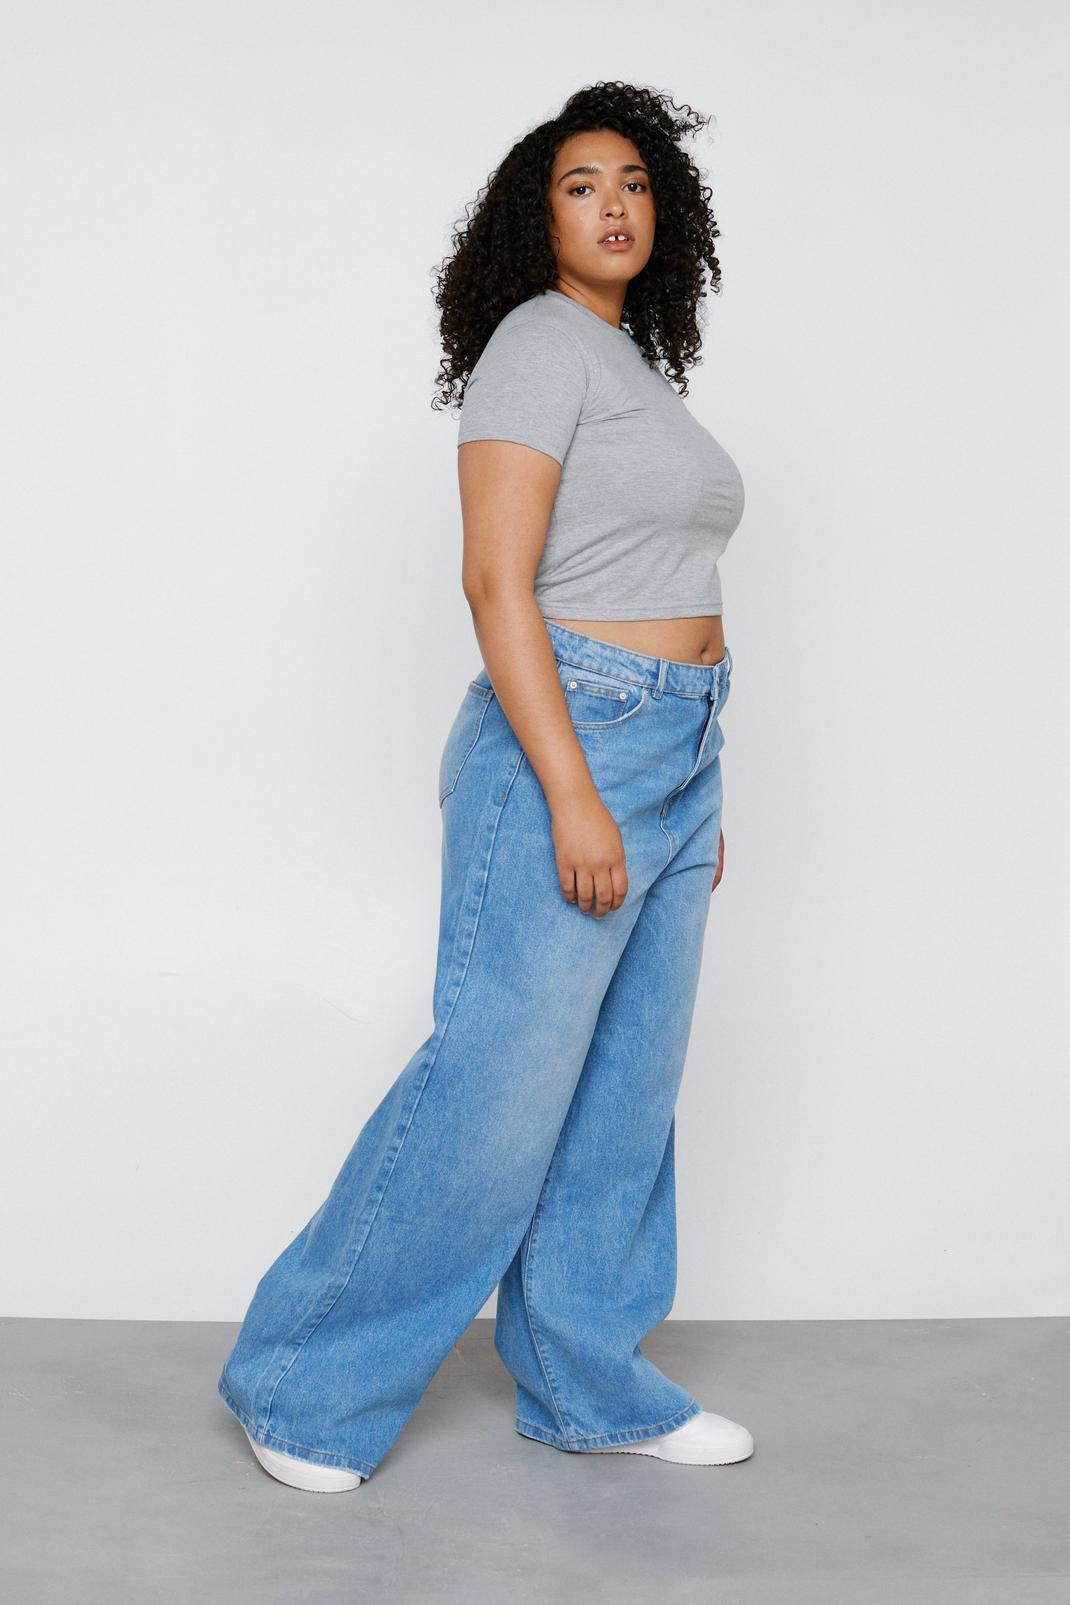 . Denim Impulse 2.0 MidBlue Girls Jeans